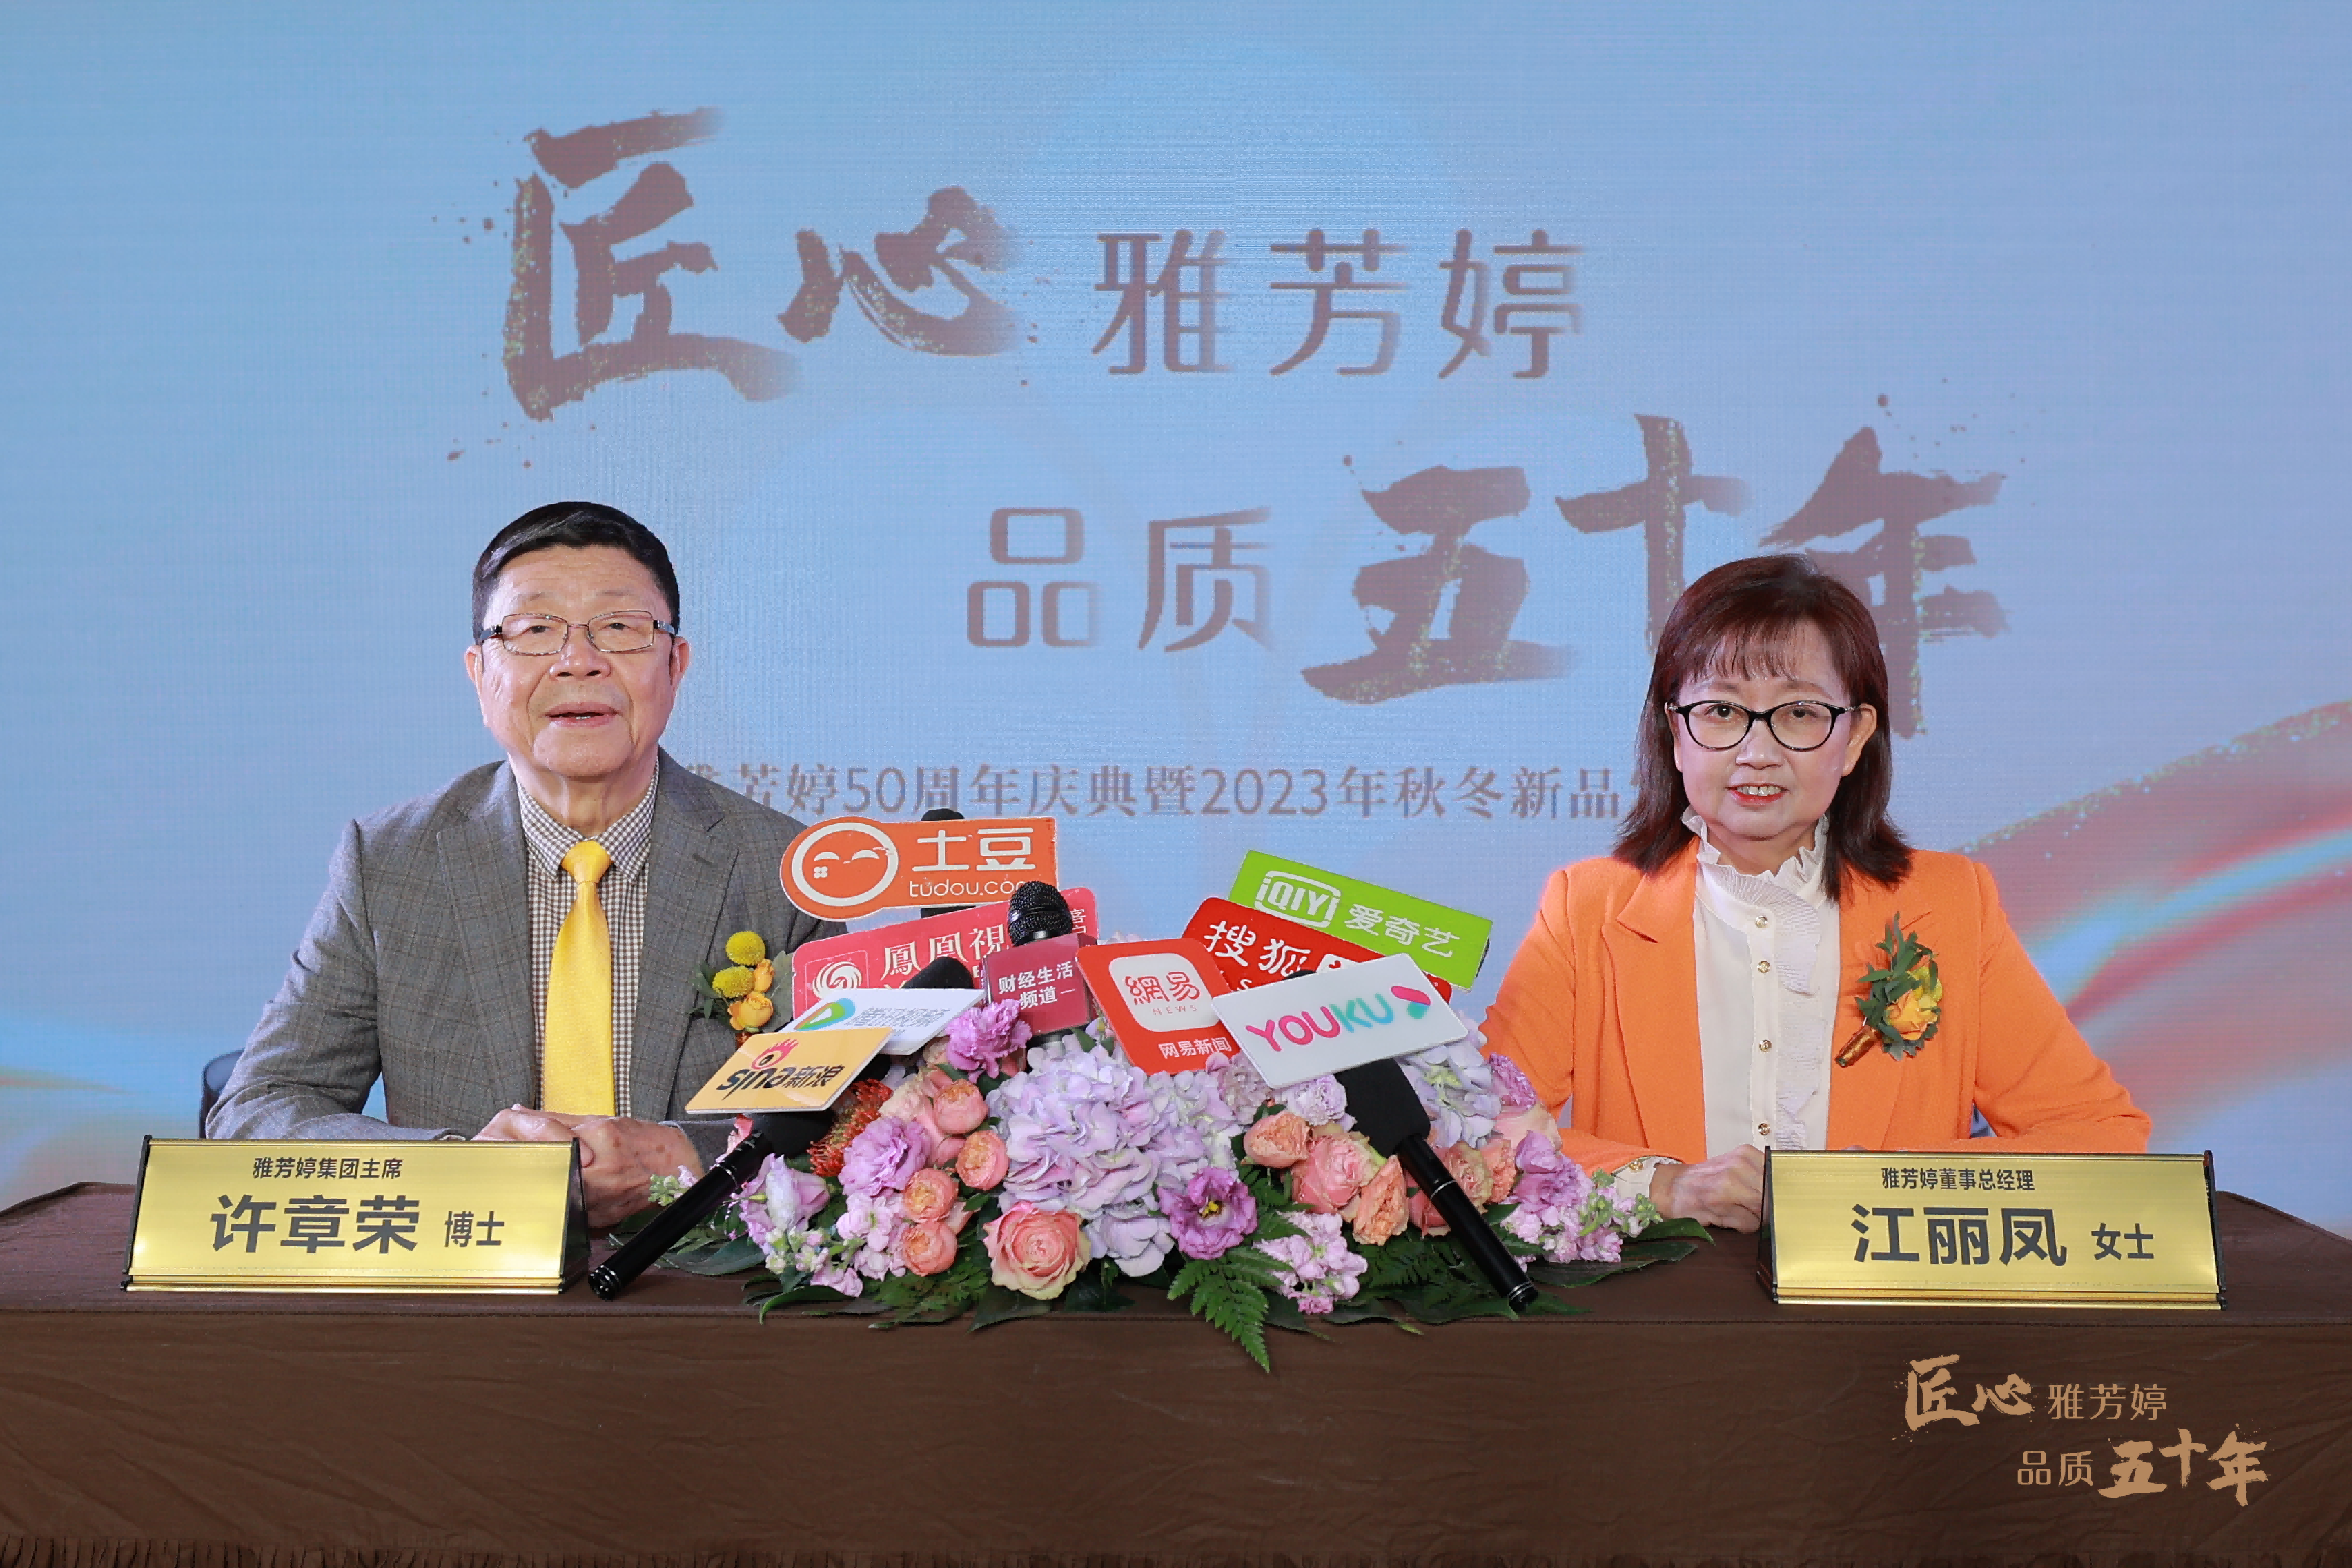 雅芳婷50周年庆典于深圳市南山区雅芳婷中心盛大举办。